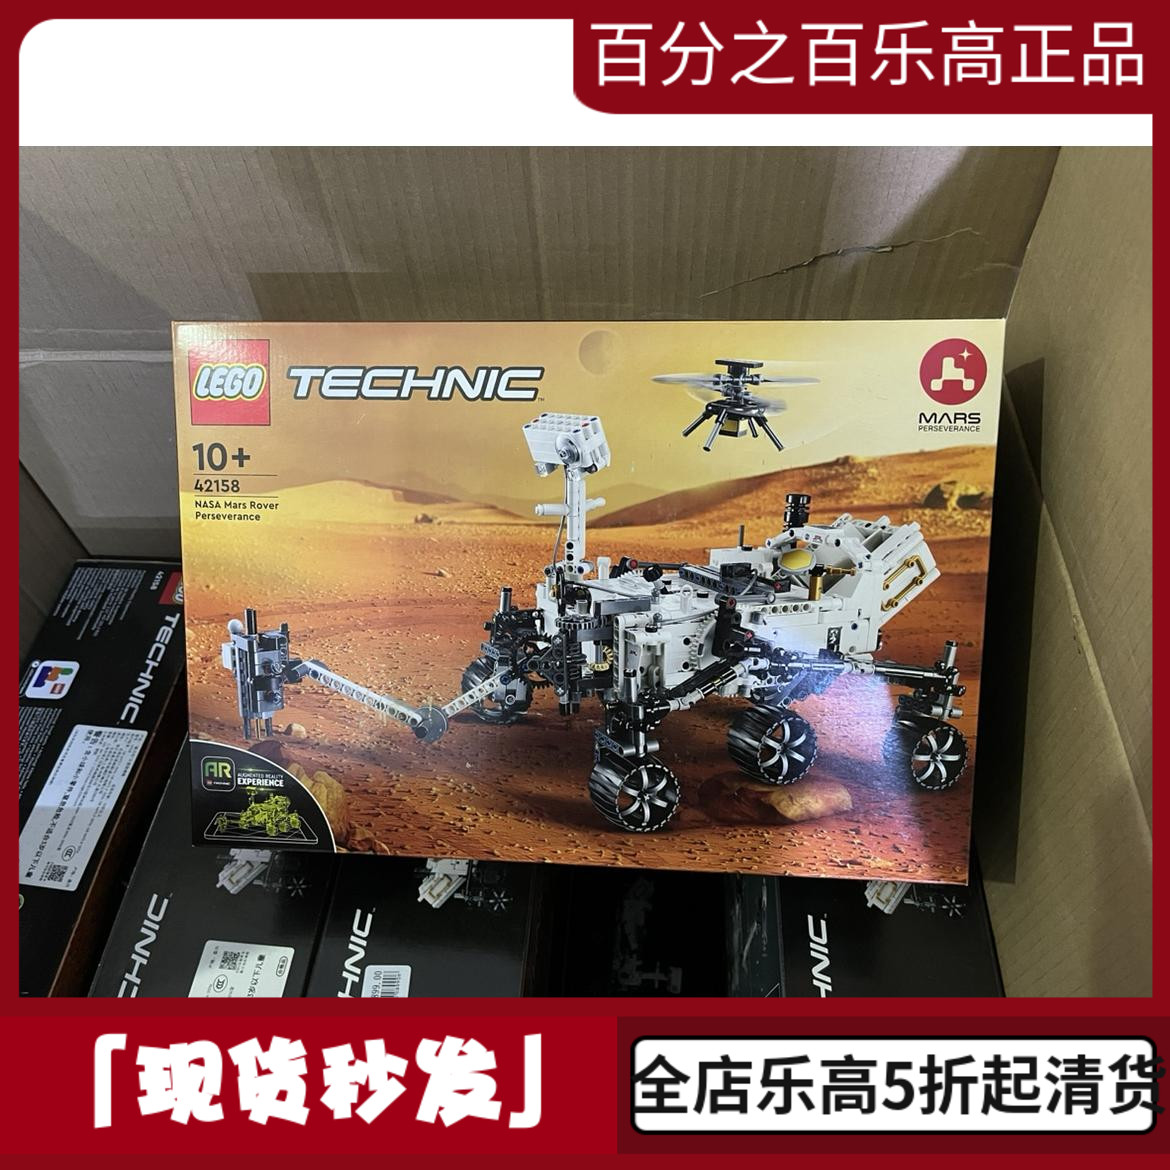 【正品保证】LEGO乐高积木机械组42158毅力号火星探测器儿童玩具